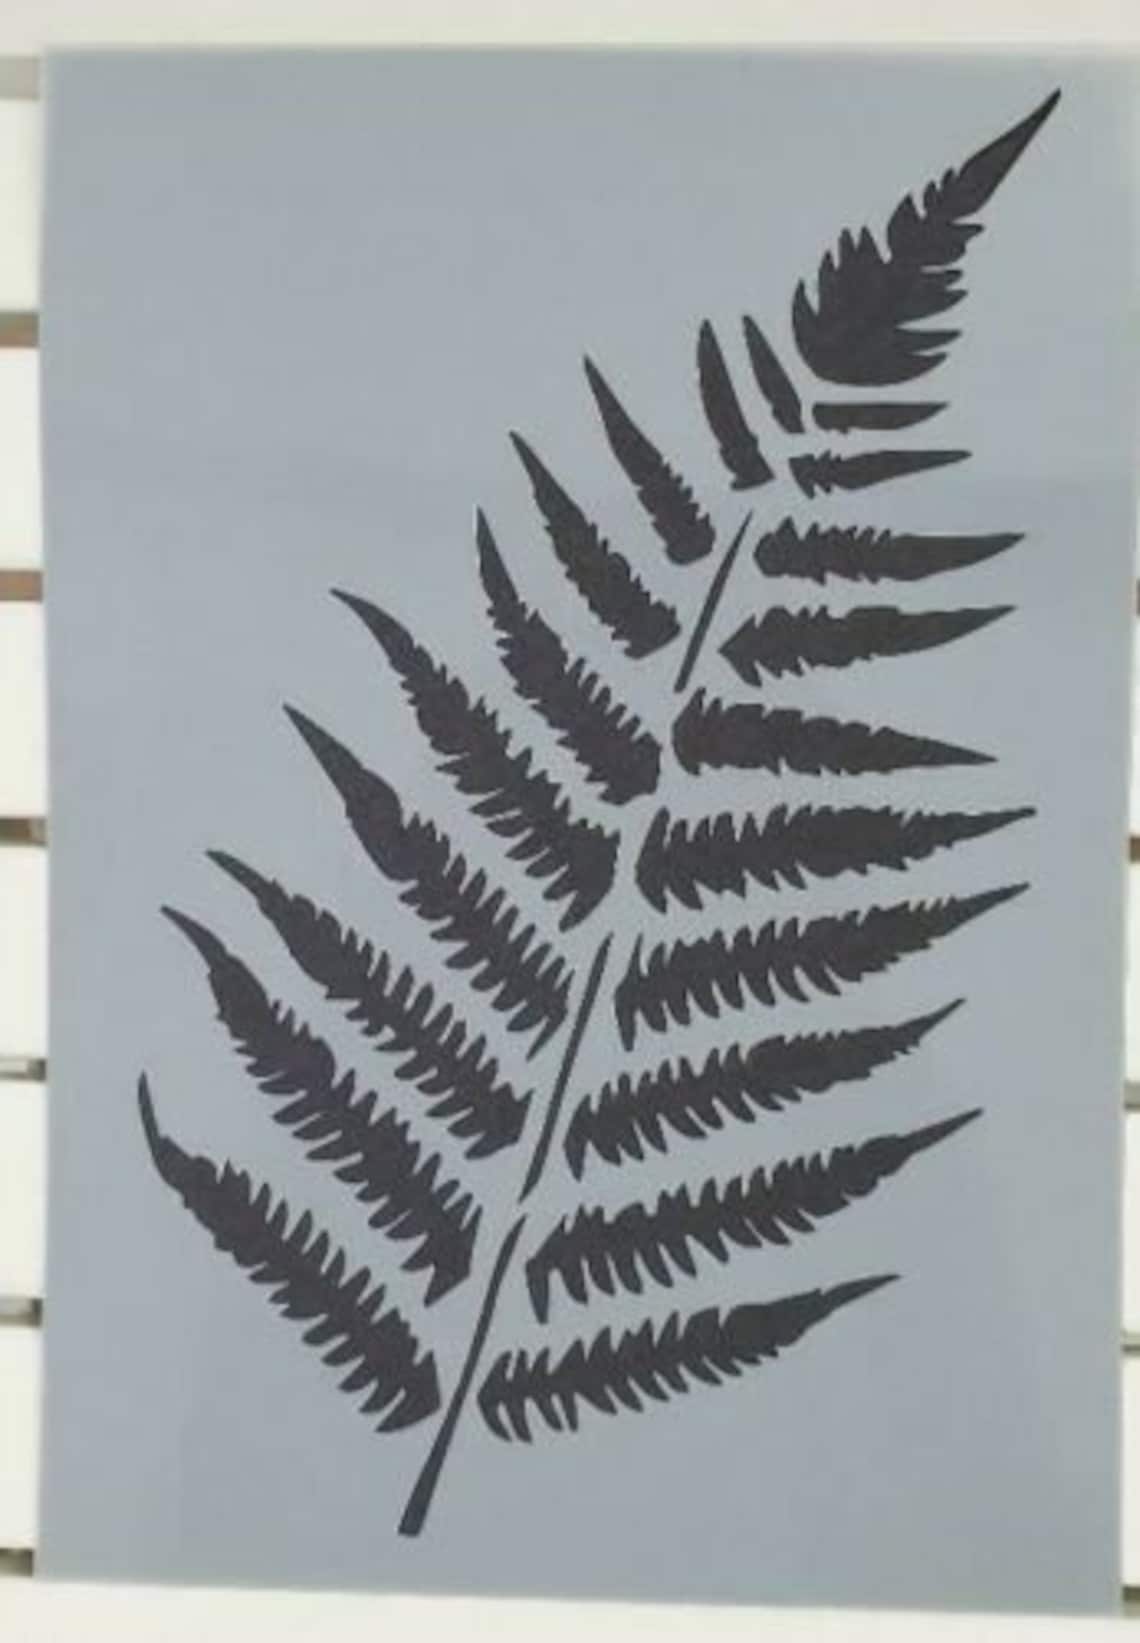 large-fern-leaf-stencil-stencil-mylar-plastic-190mic-a4-sheet-etsy